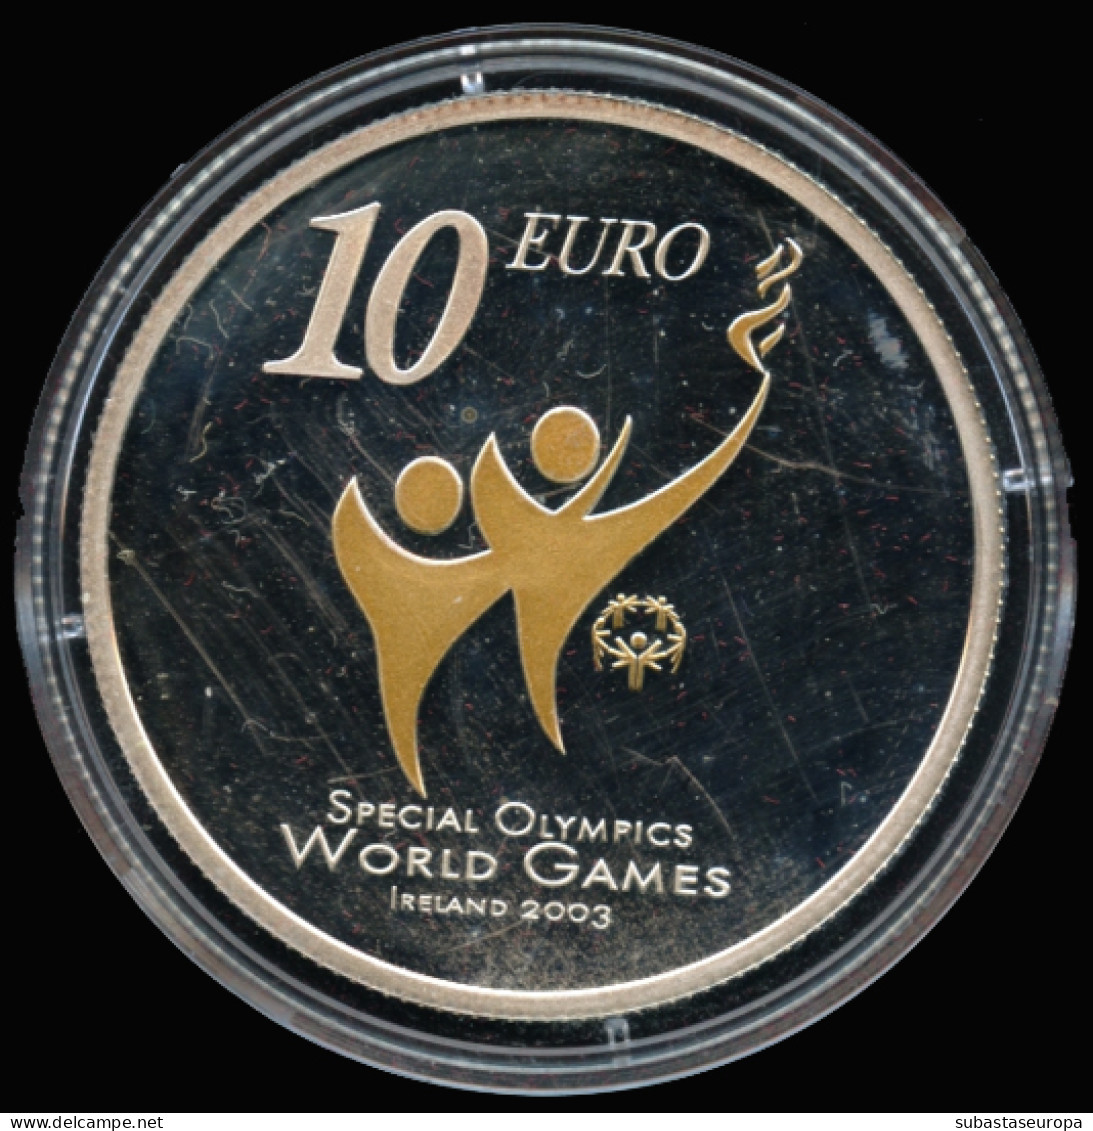 Irlanda. Moneda De Plata De 10 Euros. En Estuche. Dedicada A "Special Olympics World Summer Games", Año 2003. - Irlanda